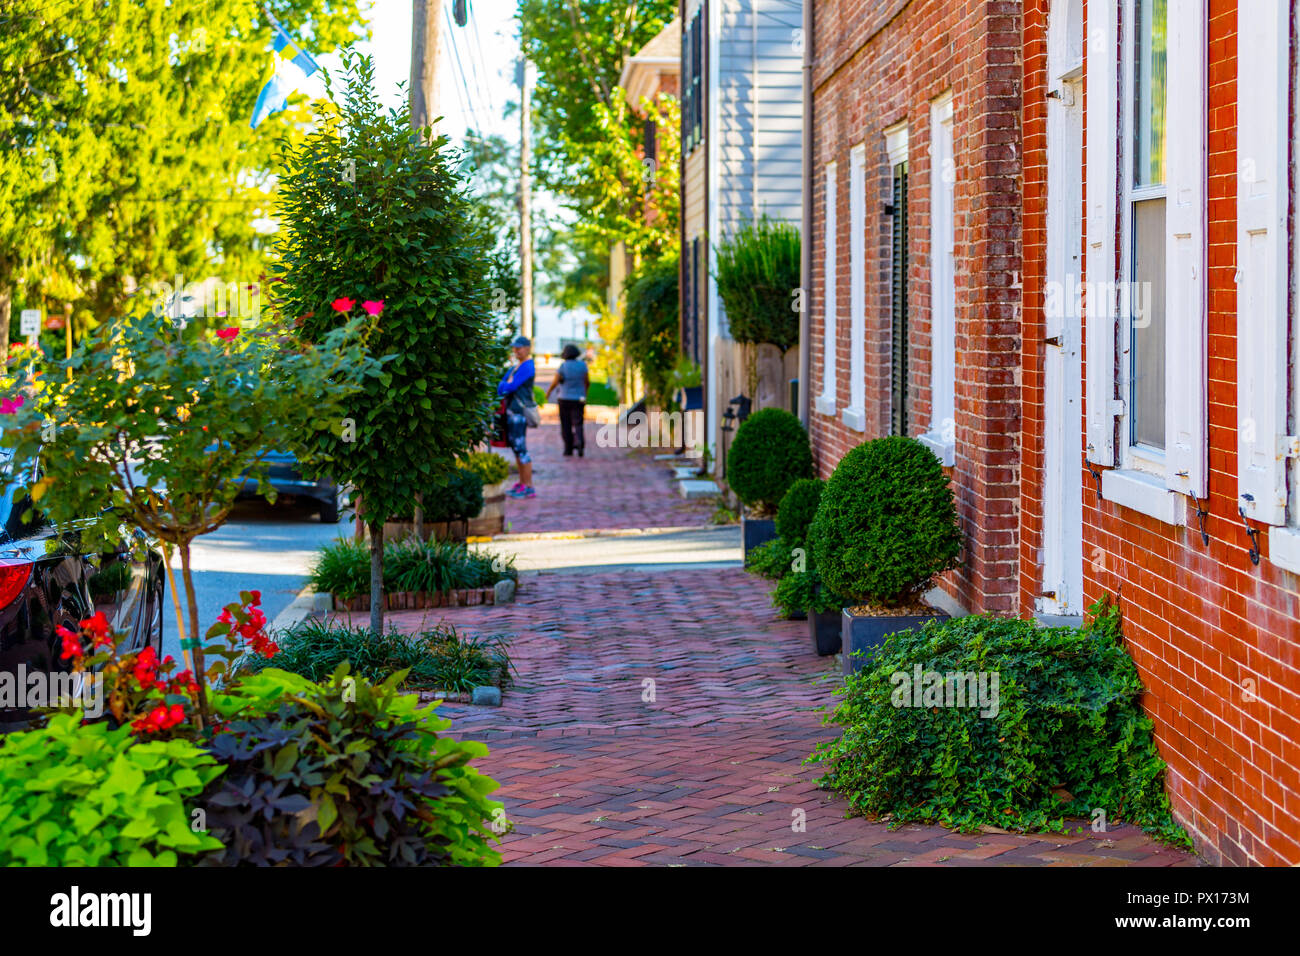 New Castle, DE, Stati Uniti d'America - 23 Settembre 2015: marciapiedi di mattoni con foglie colorate nel quartiere storico del Castello Nuovo. Foto Stock